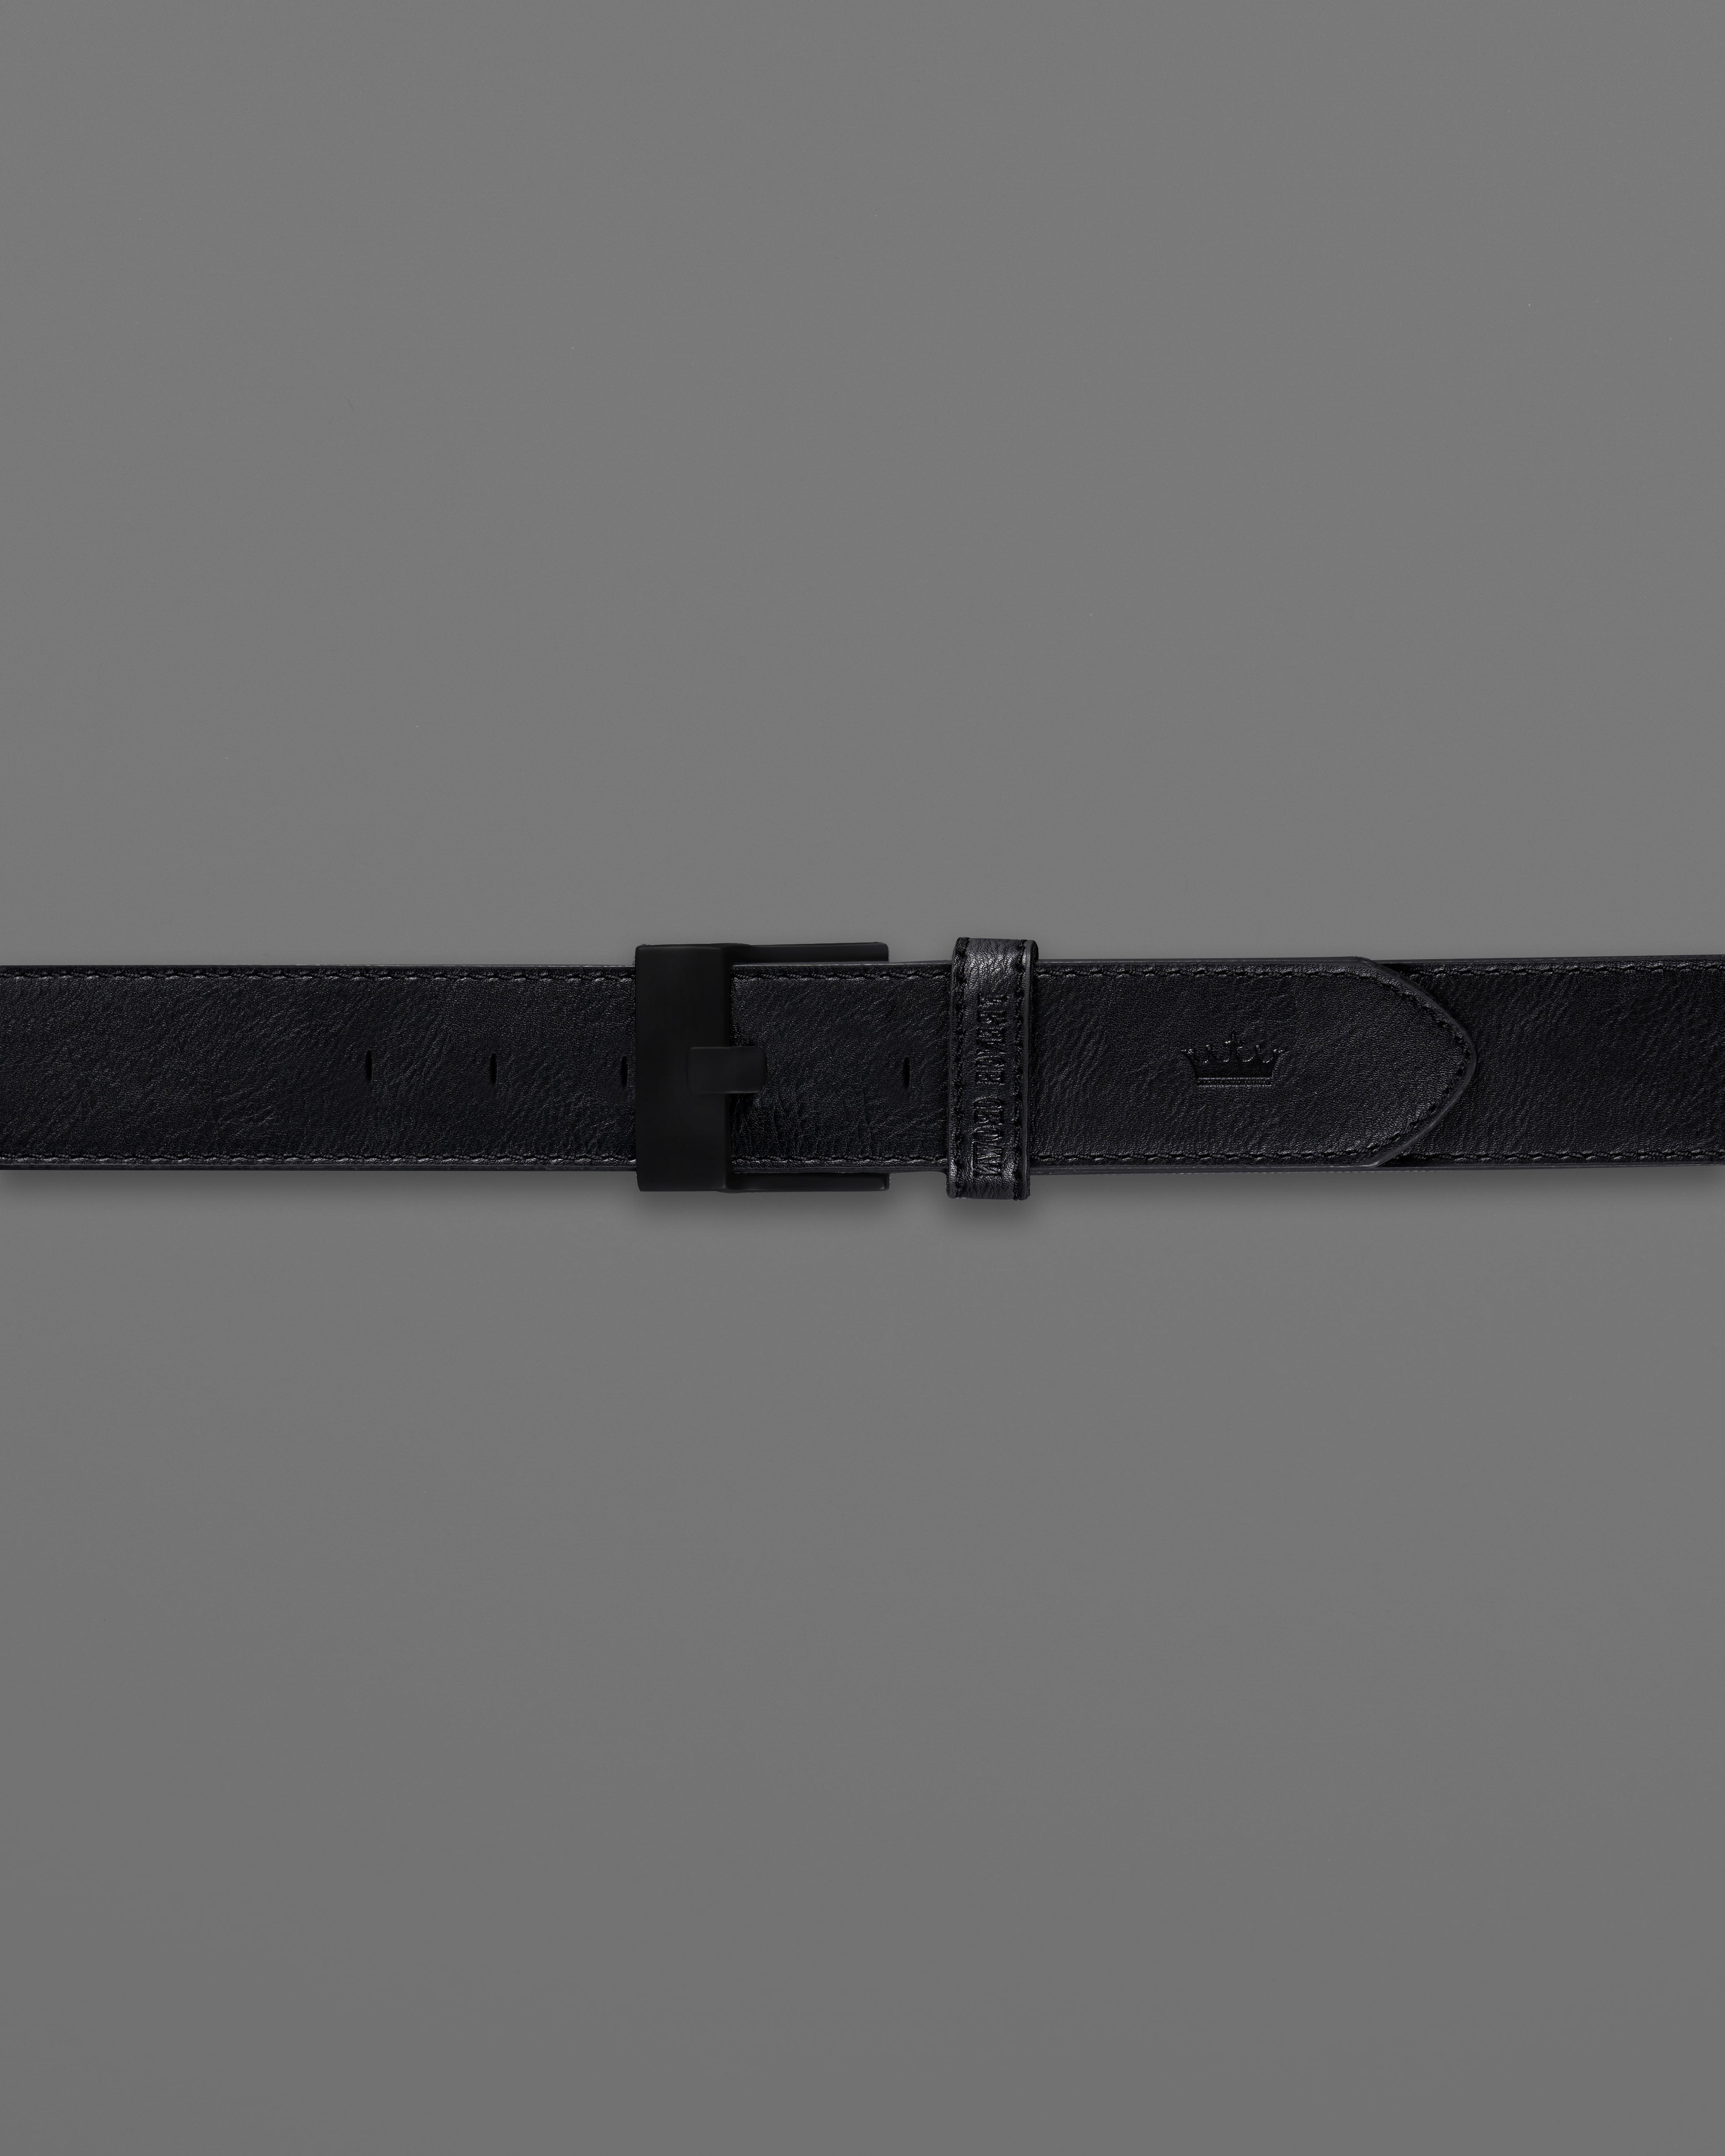 Jade Black Leather Free Lightweight Handcrafted Belt BT103-28, BT103-30, BT103-32, BT103-34, BT103-36, BT103-38